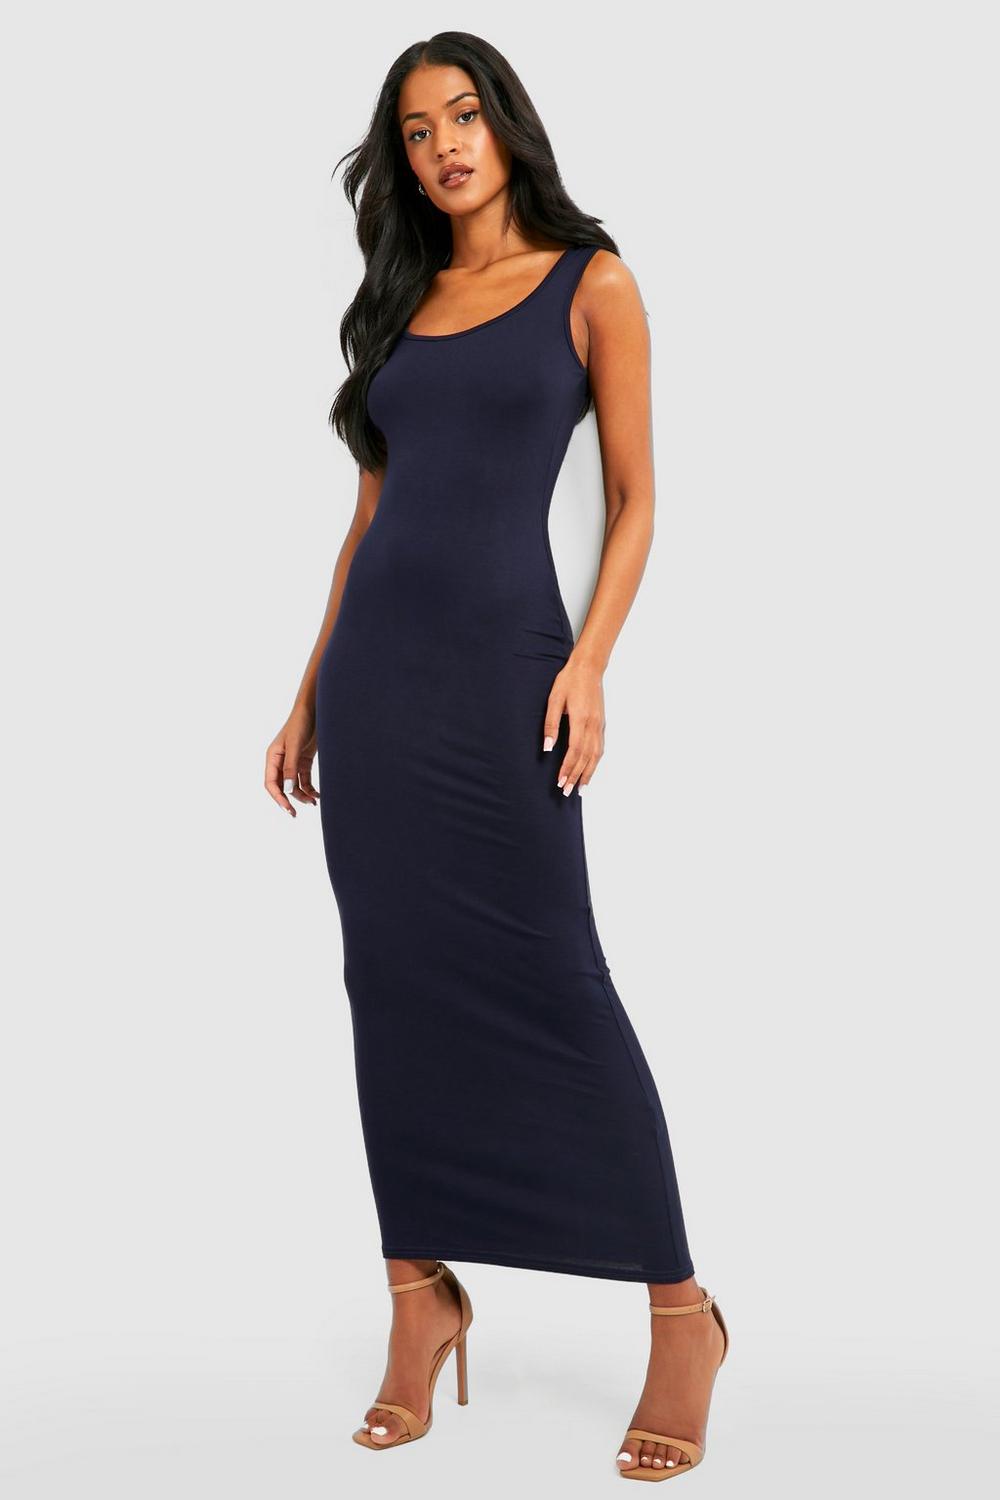 Boohoo Womens Tall Sandy Maxi Dress | eBay